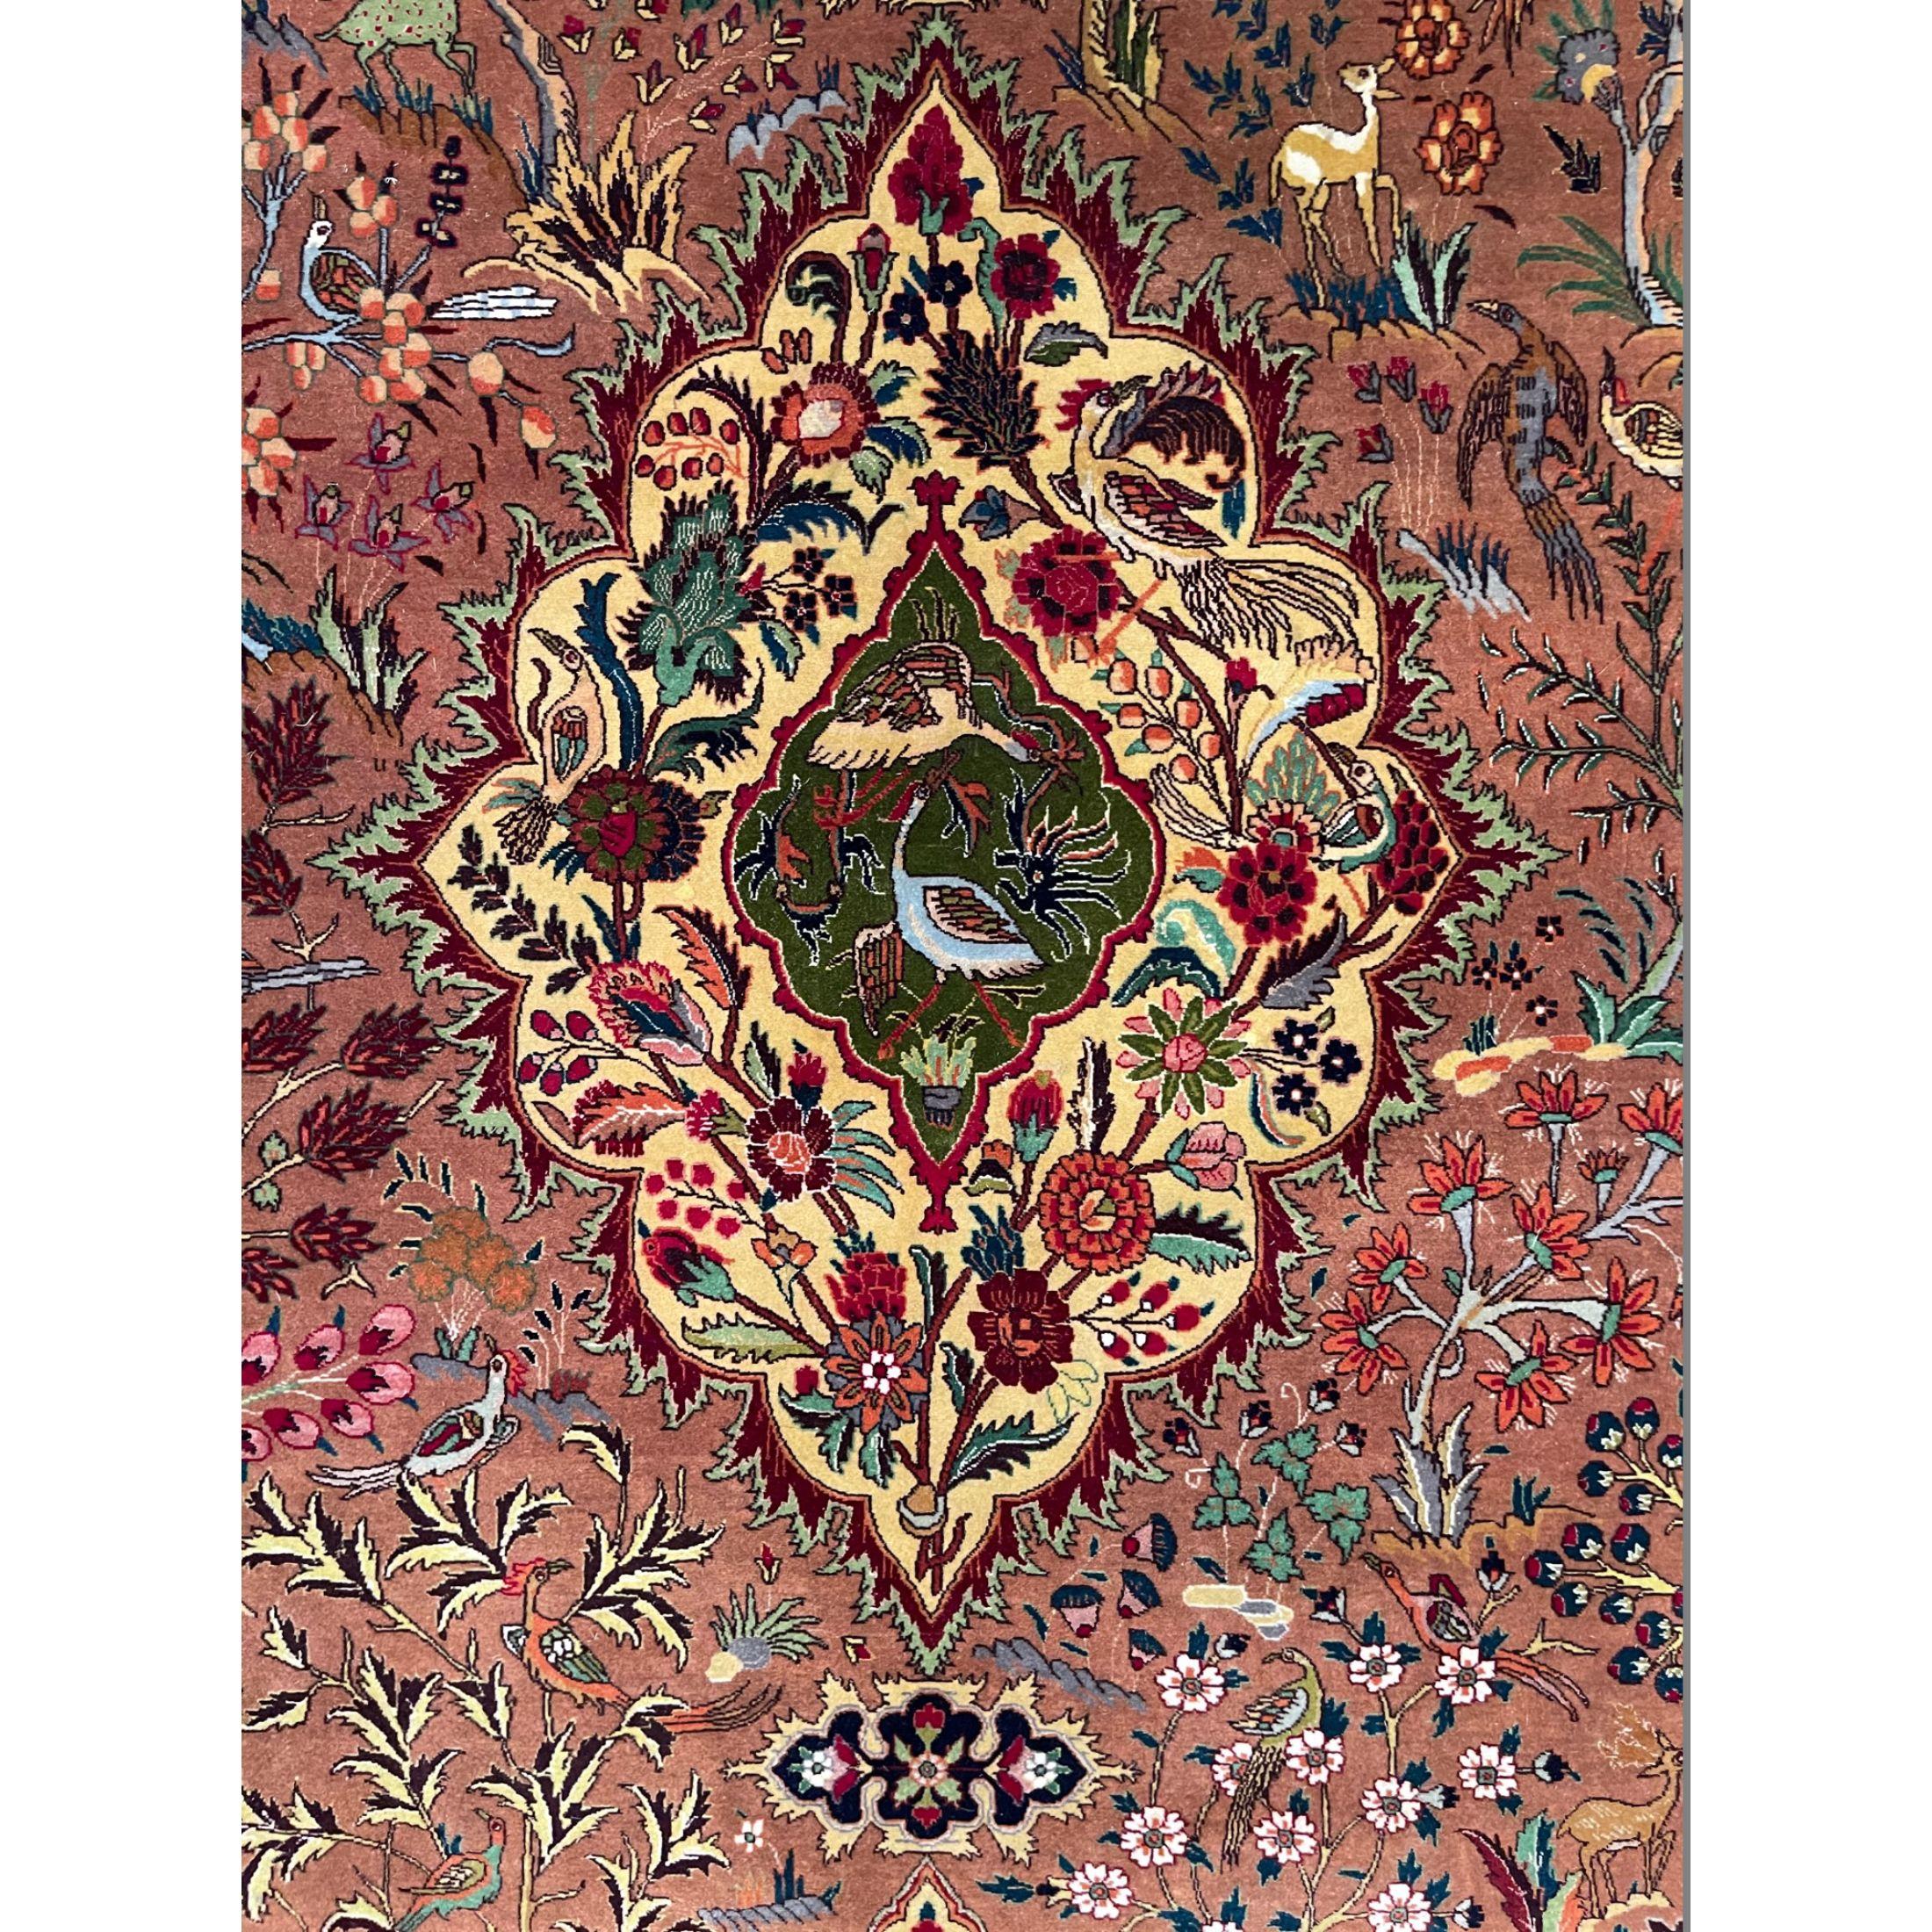 Antike Täbriz-Teppiche zeichnen sich durch ihre exzellente Knüpfung und ihre bemerkenswerte Beibehaltung der klassischen Traditionen des antiken persischen Teppichdesigns aus. Sie lassen sich jedoch weder durch ein bestimmtes Muster noch durch ihre